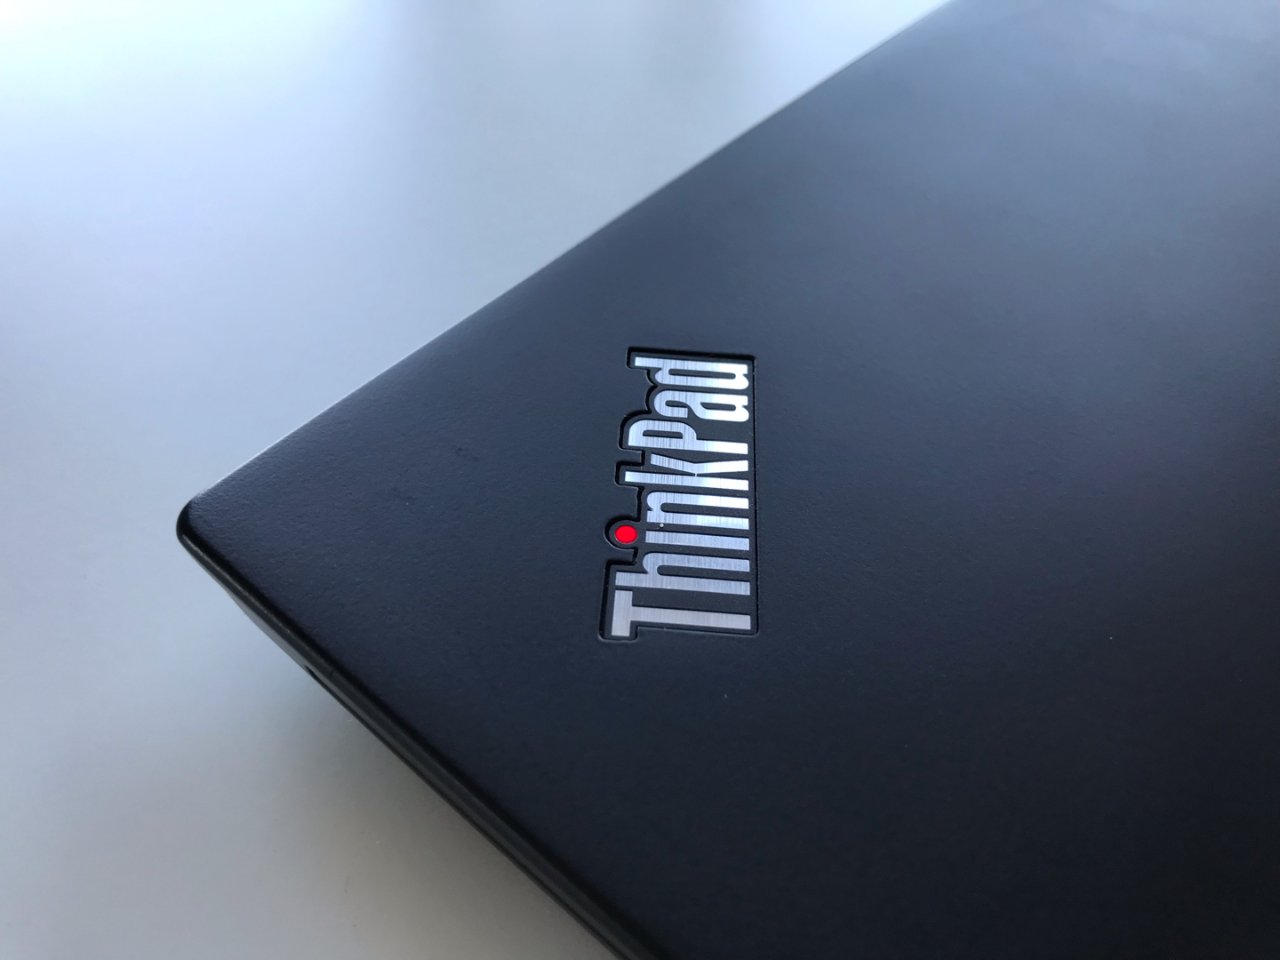 ThinkPad T480s